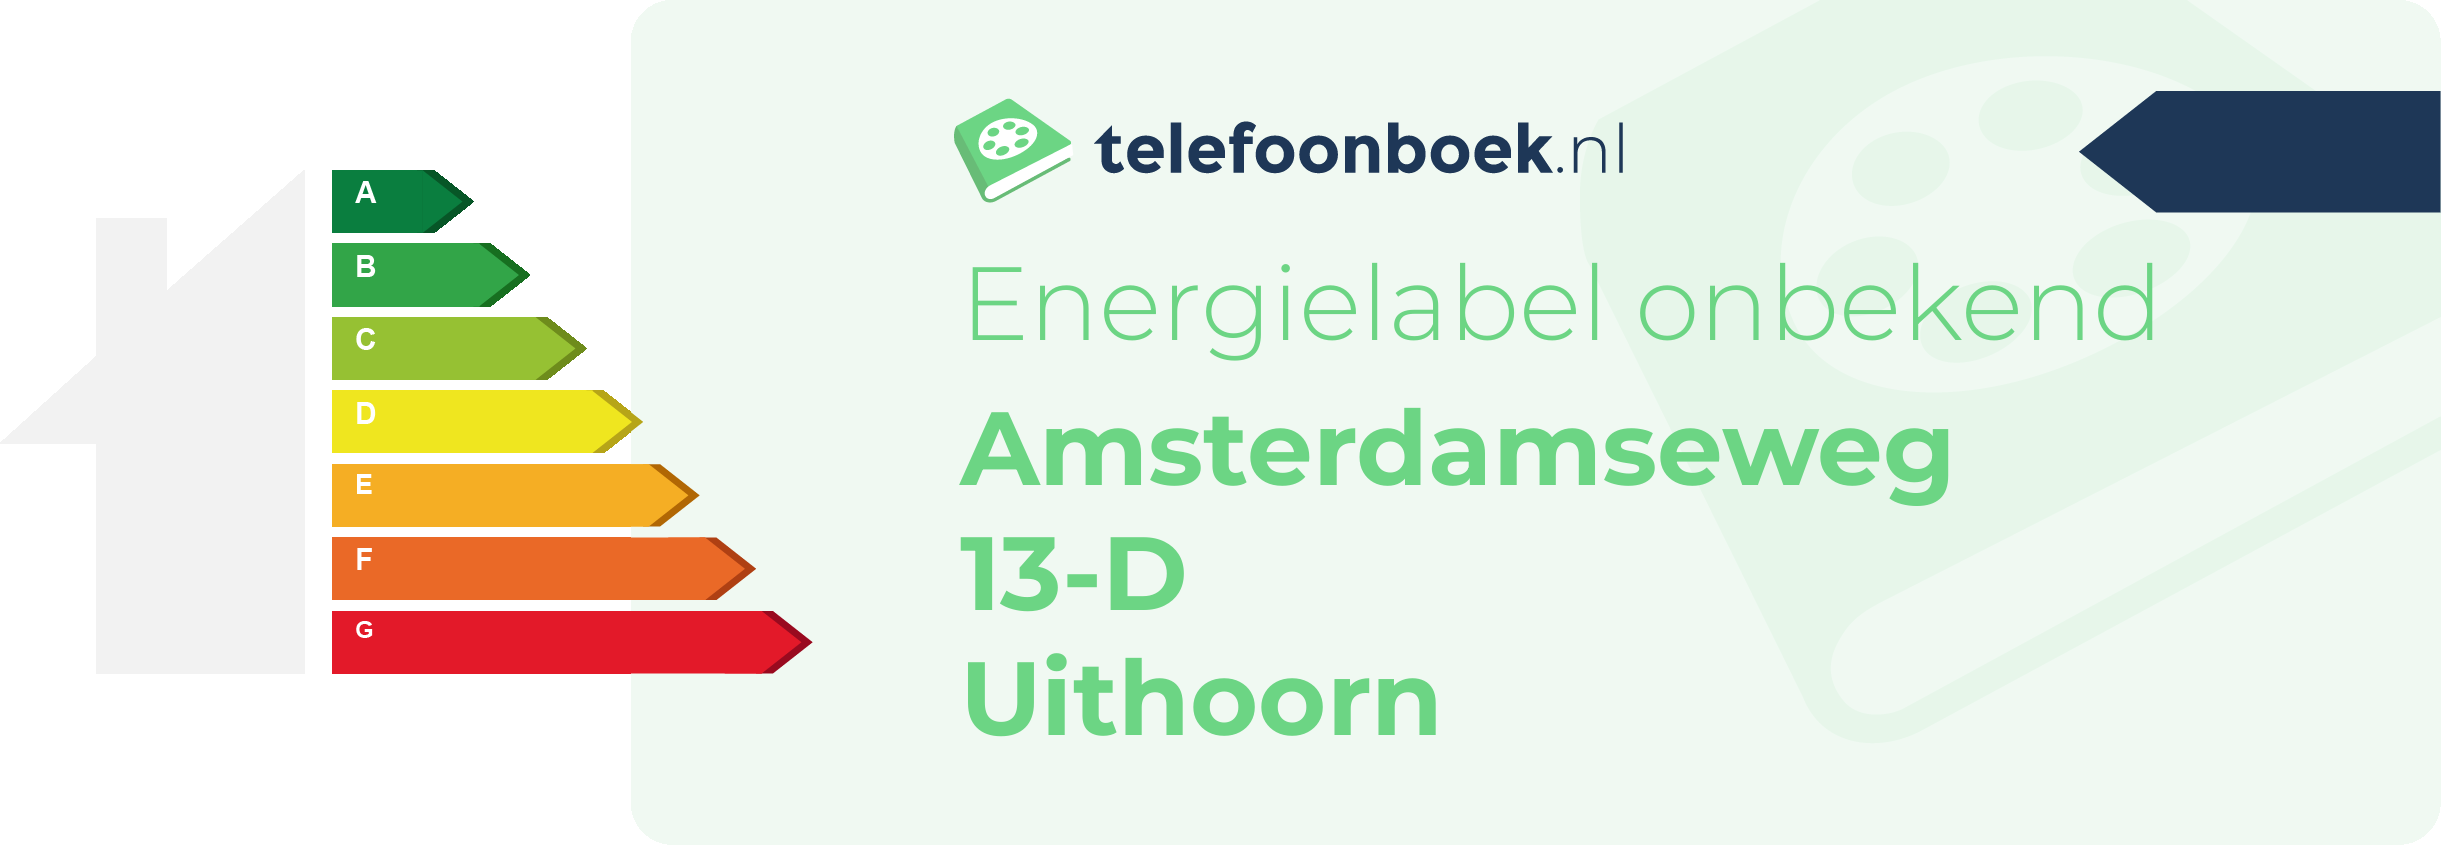 Energielabel Amsterdamseweg 13-D Uithoorn